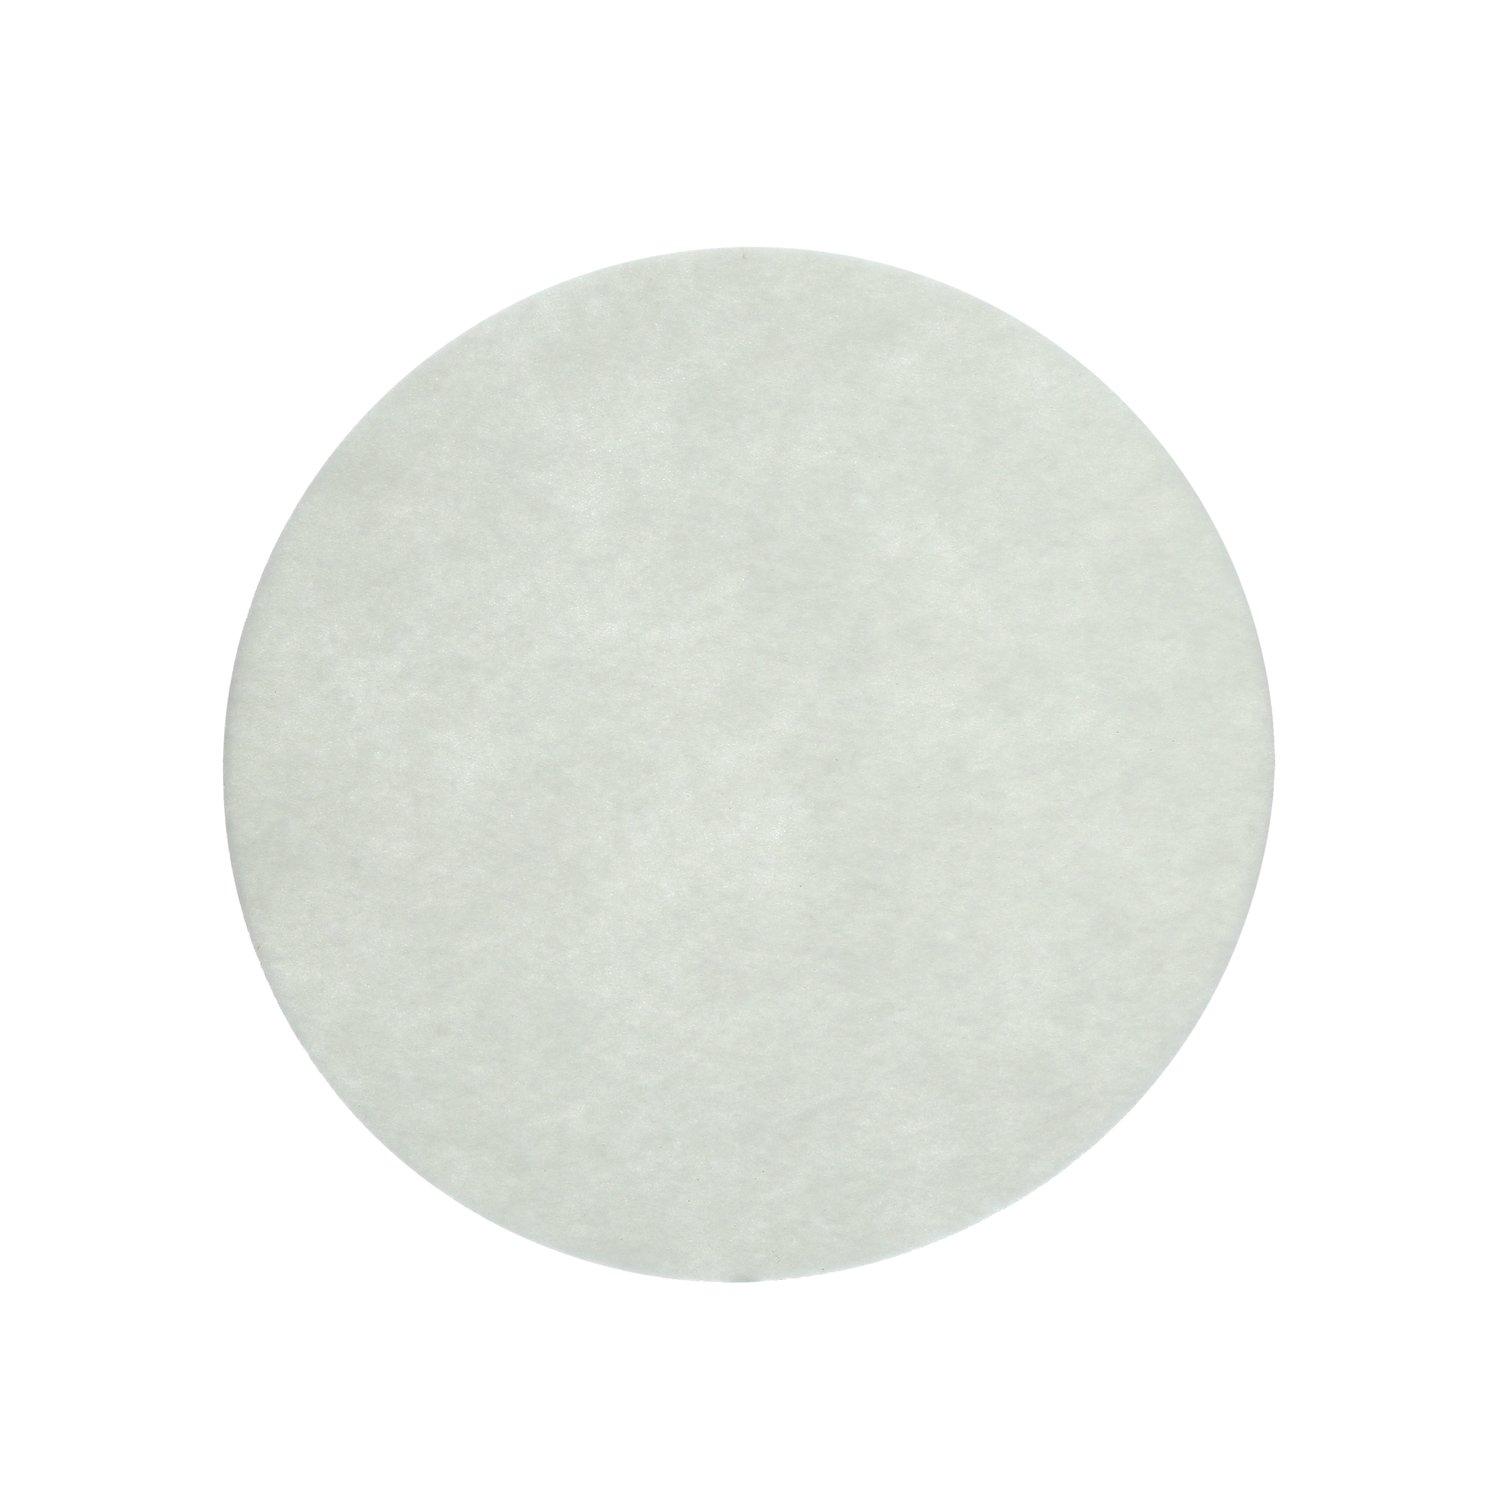 7000126601 - 3M Carpet Bonnet Pad, White, 19 in, 5/Case